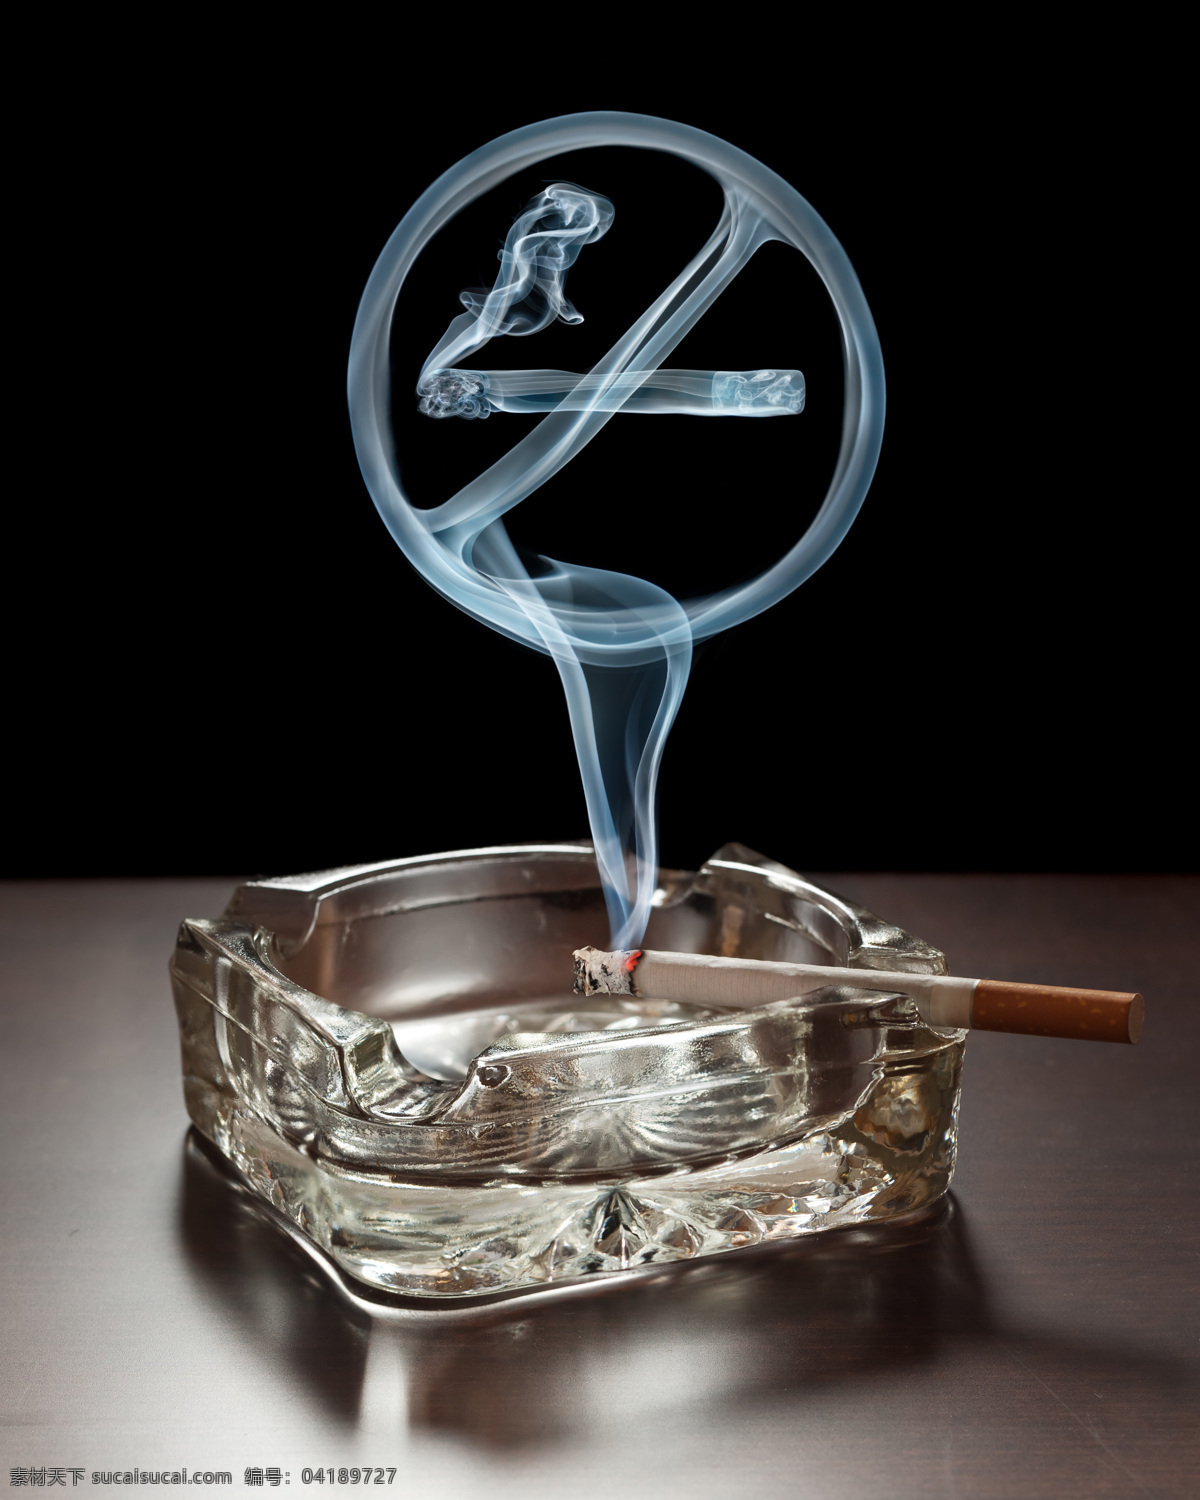 禁烟 烟灰缸 烟头 燃烧的香烟 香烟 烟 烟雾 烟雾禁烟 宣传 禁烟宣传 创意 创意禁烟 广告 工艺广告